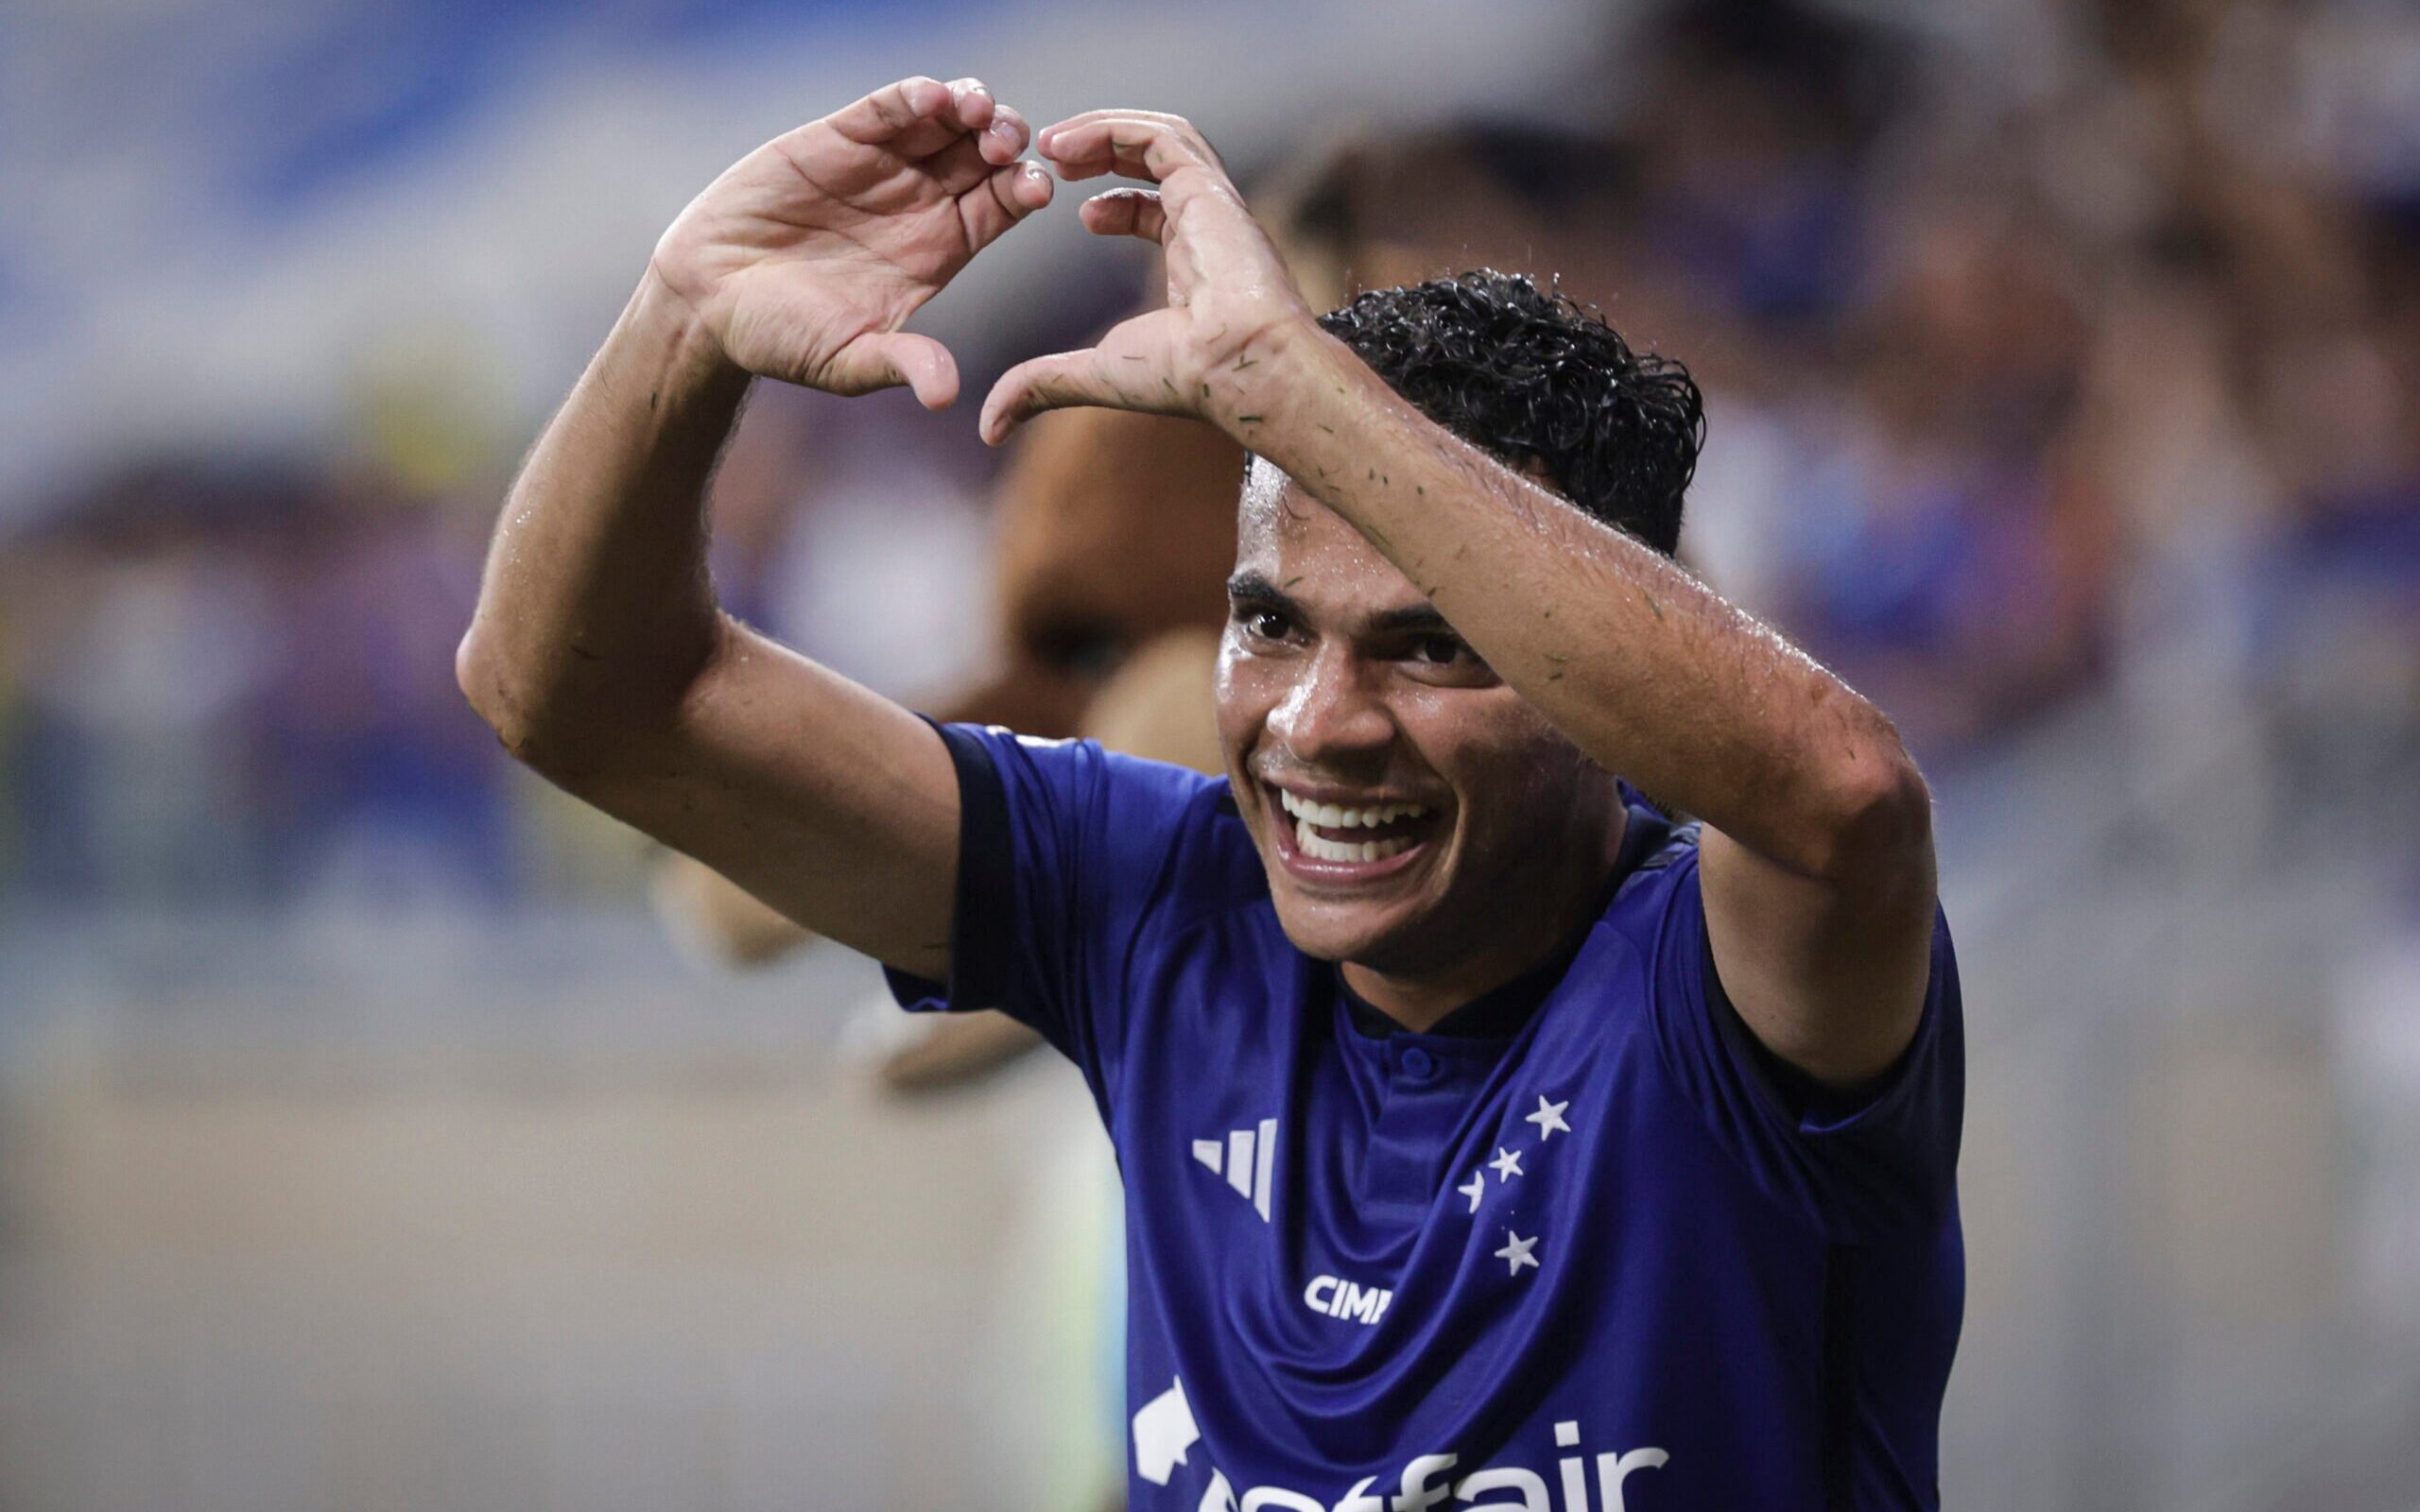 Cruzeiro define perfil ideal para contratação de técnico - Lance!